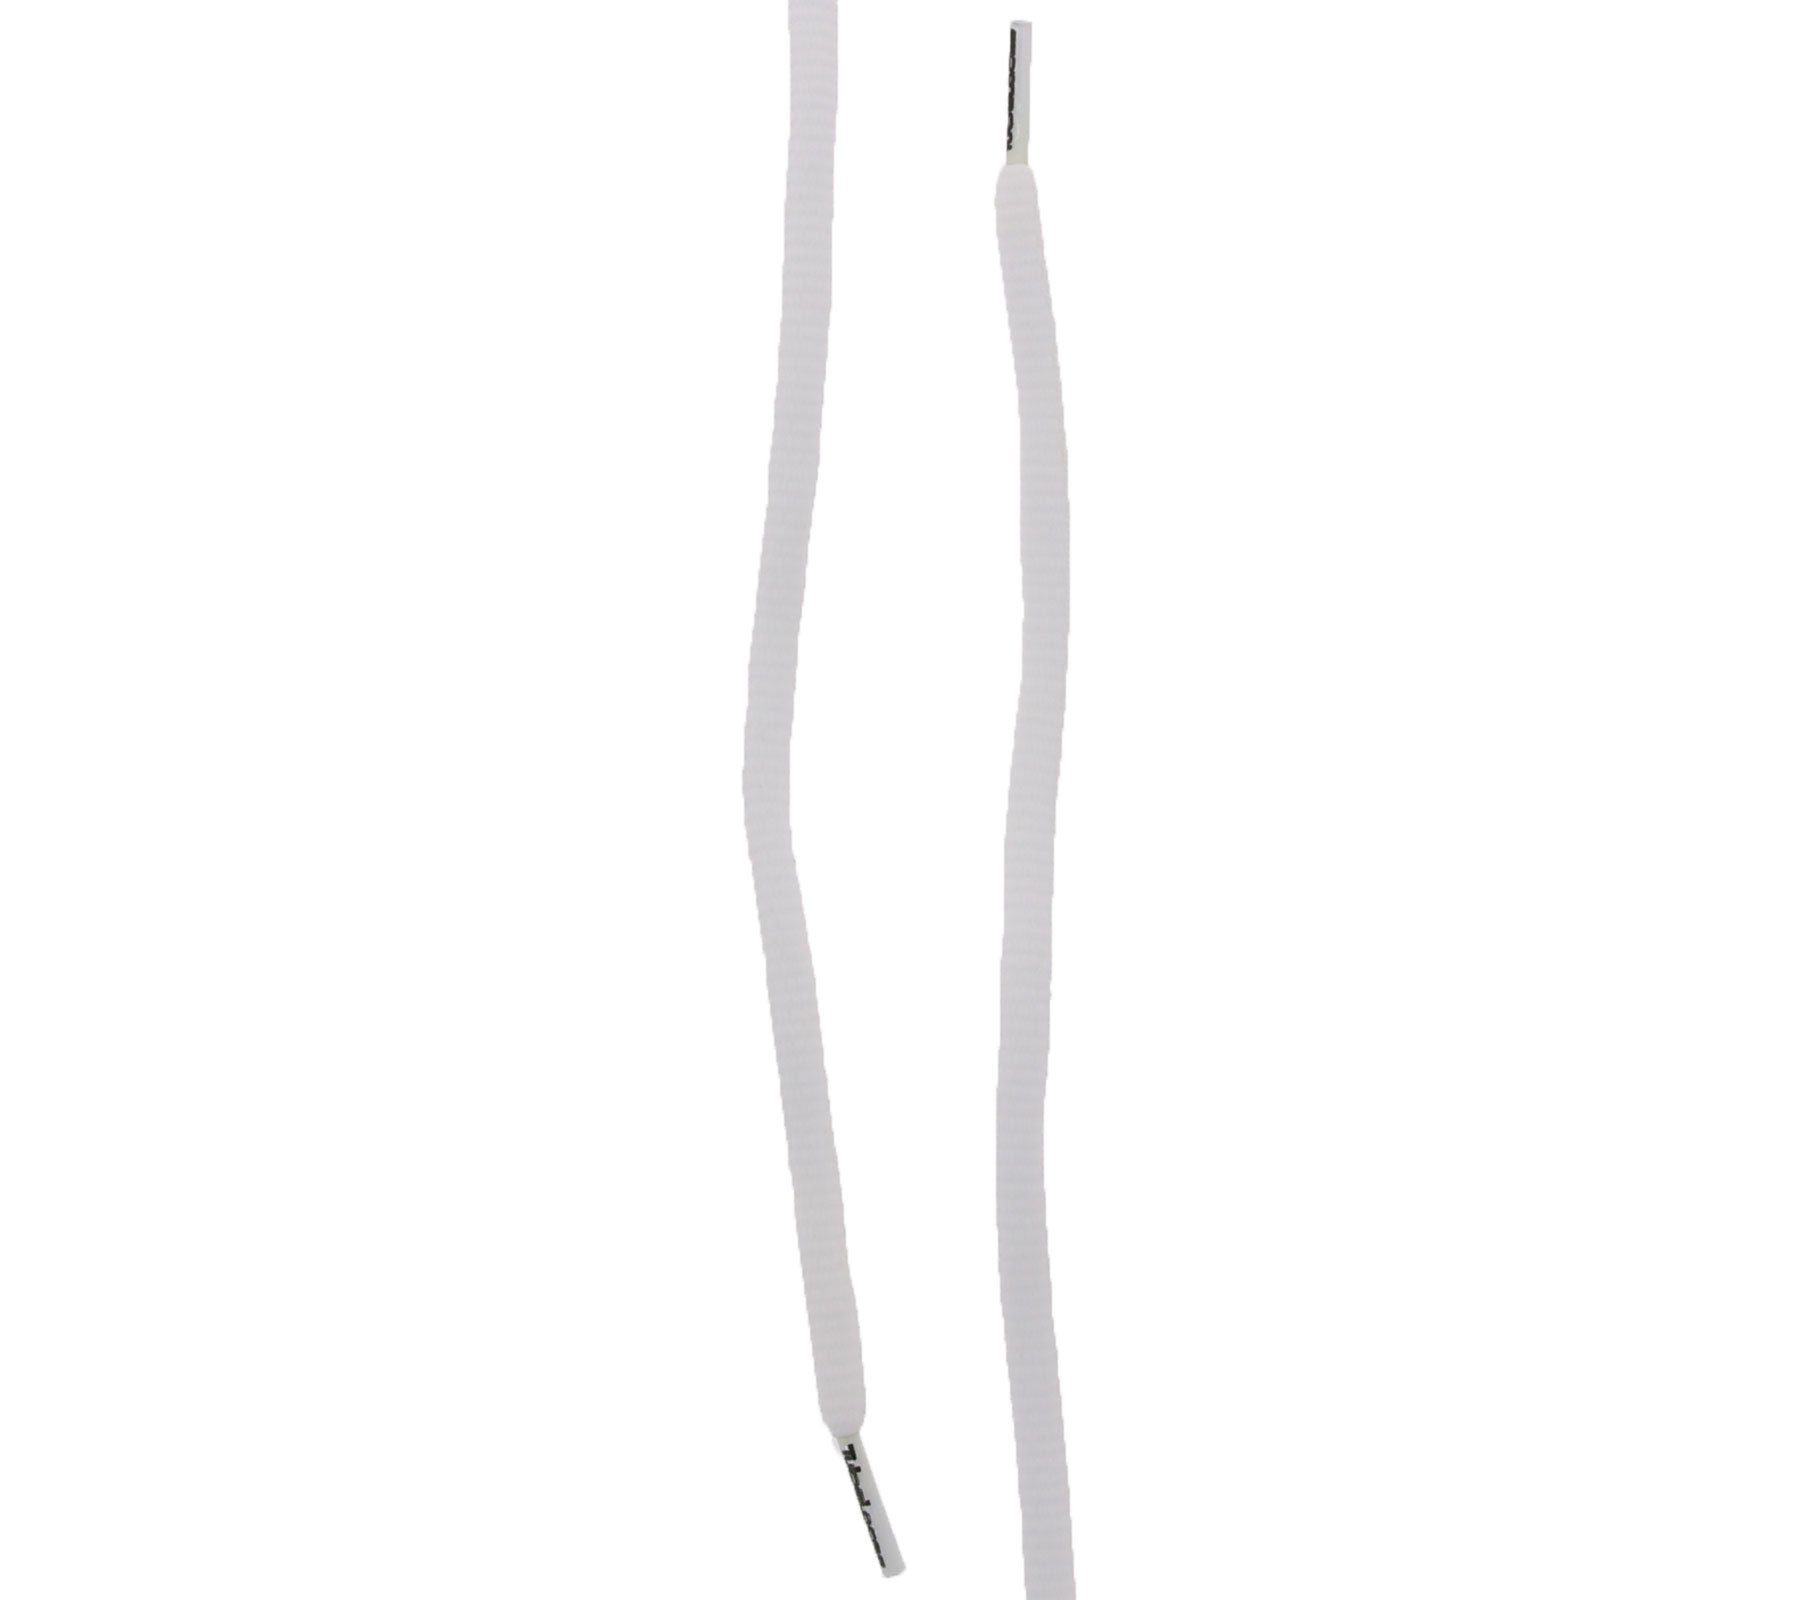 Schnürsenkel TubeLaces schlichte Schnürbänder Weiß Schuhband Tubelaces Schnürsenkel Schuh